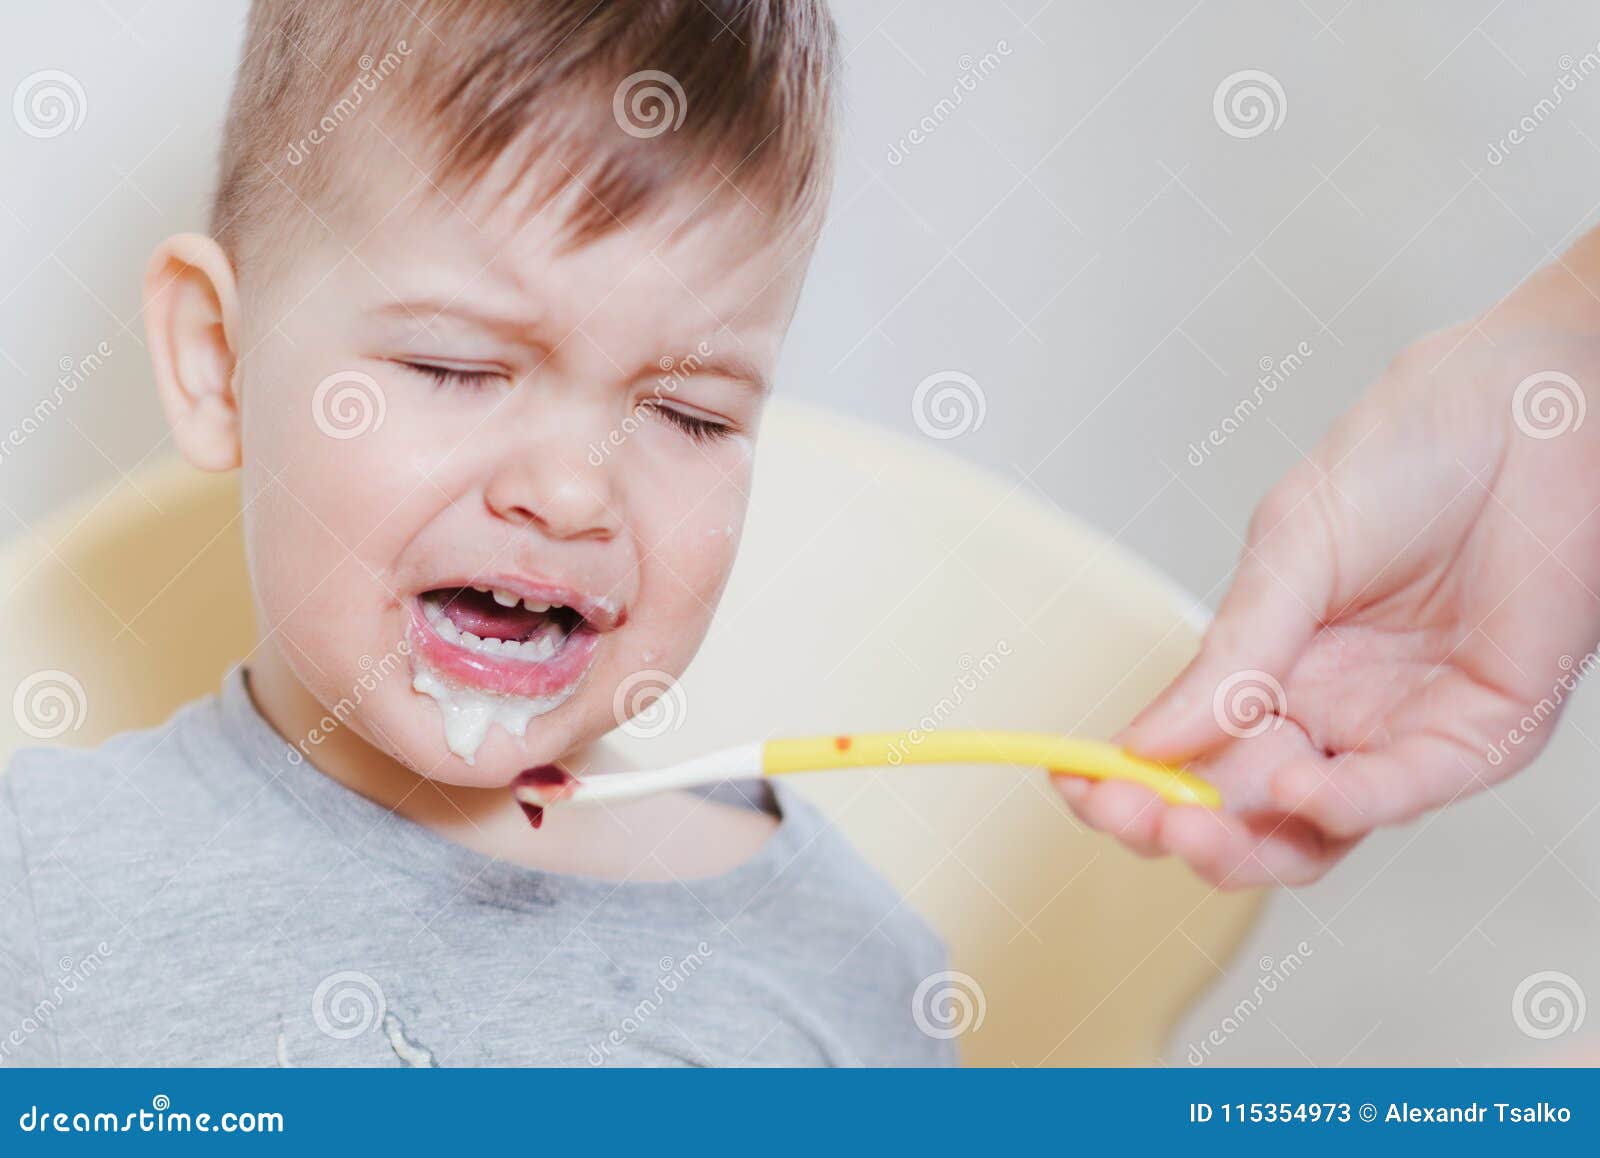 Дети кушают и плачут. Кричащий ребенок с ложкой. Ребенок ест и плачет. Ребенок плачет отказывается есть. Ребенок плачет и ест с ложки.